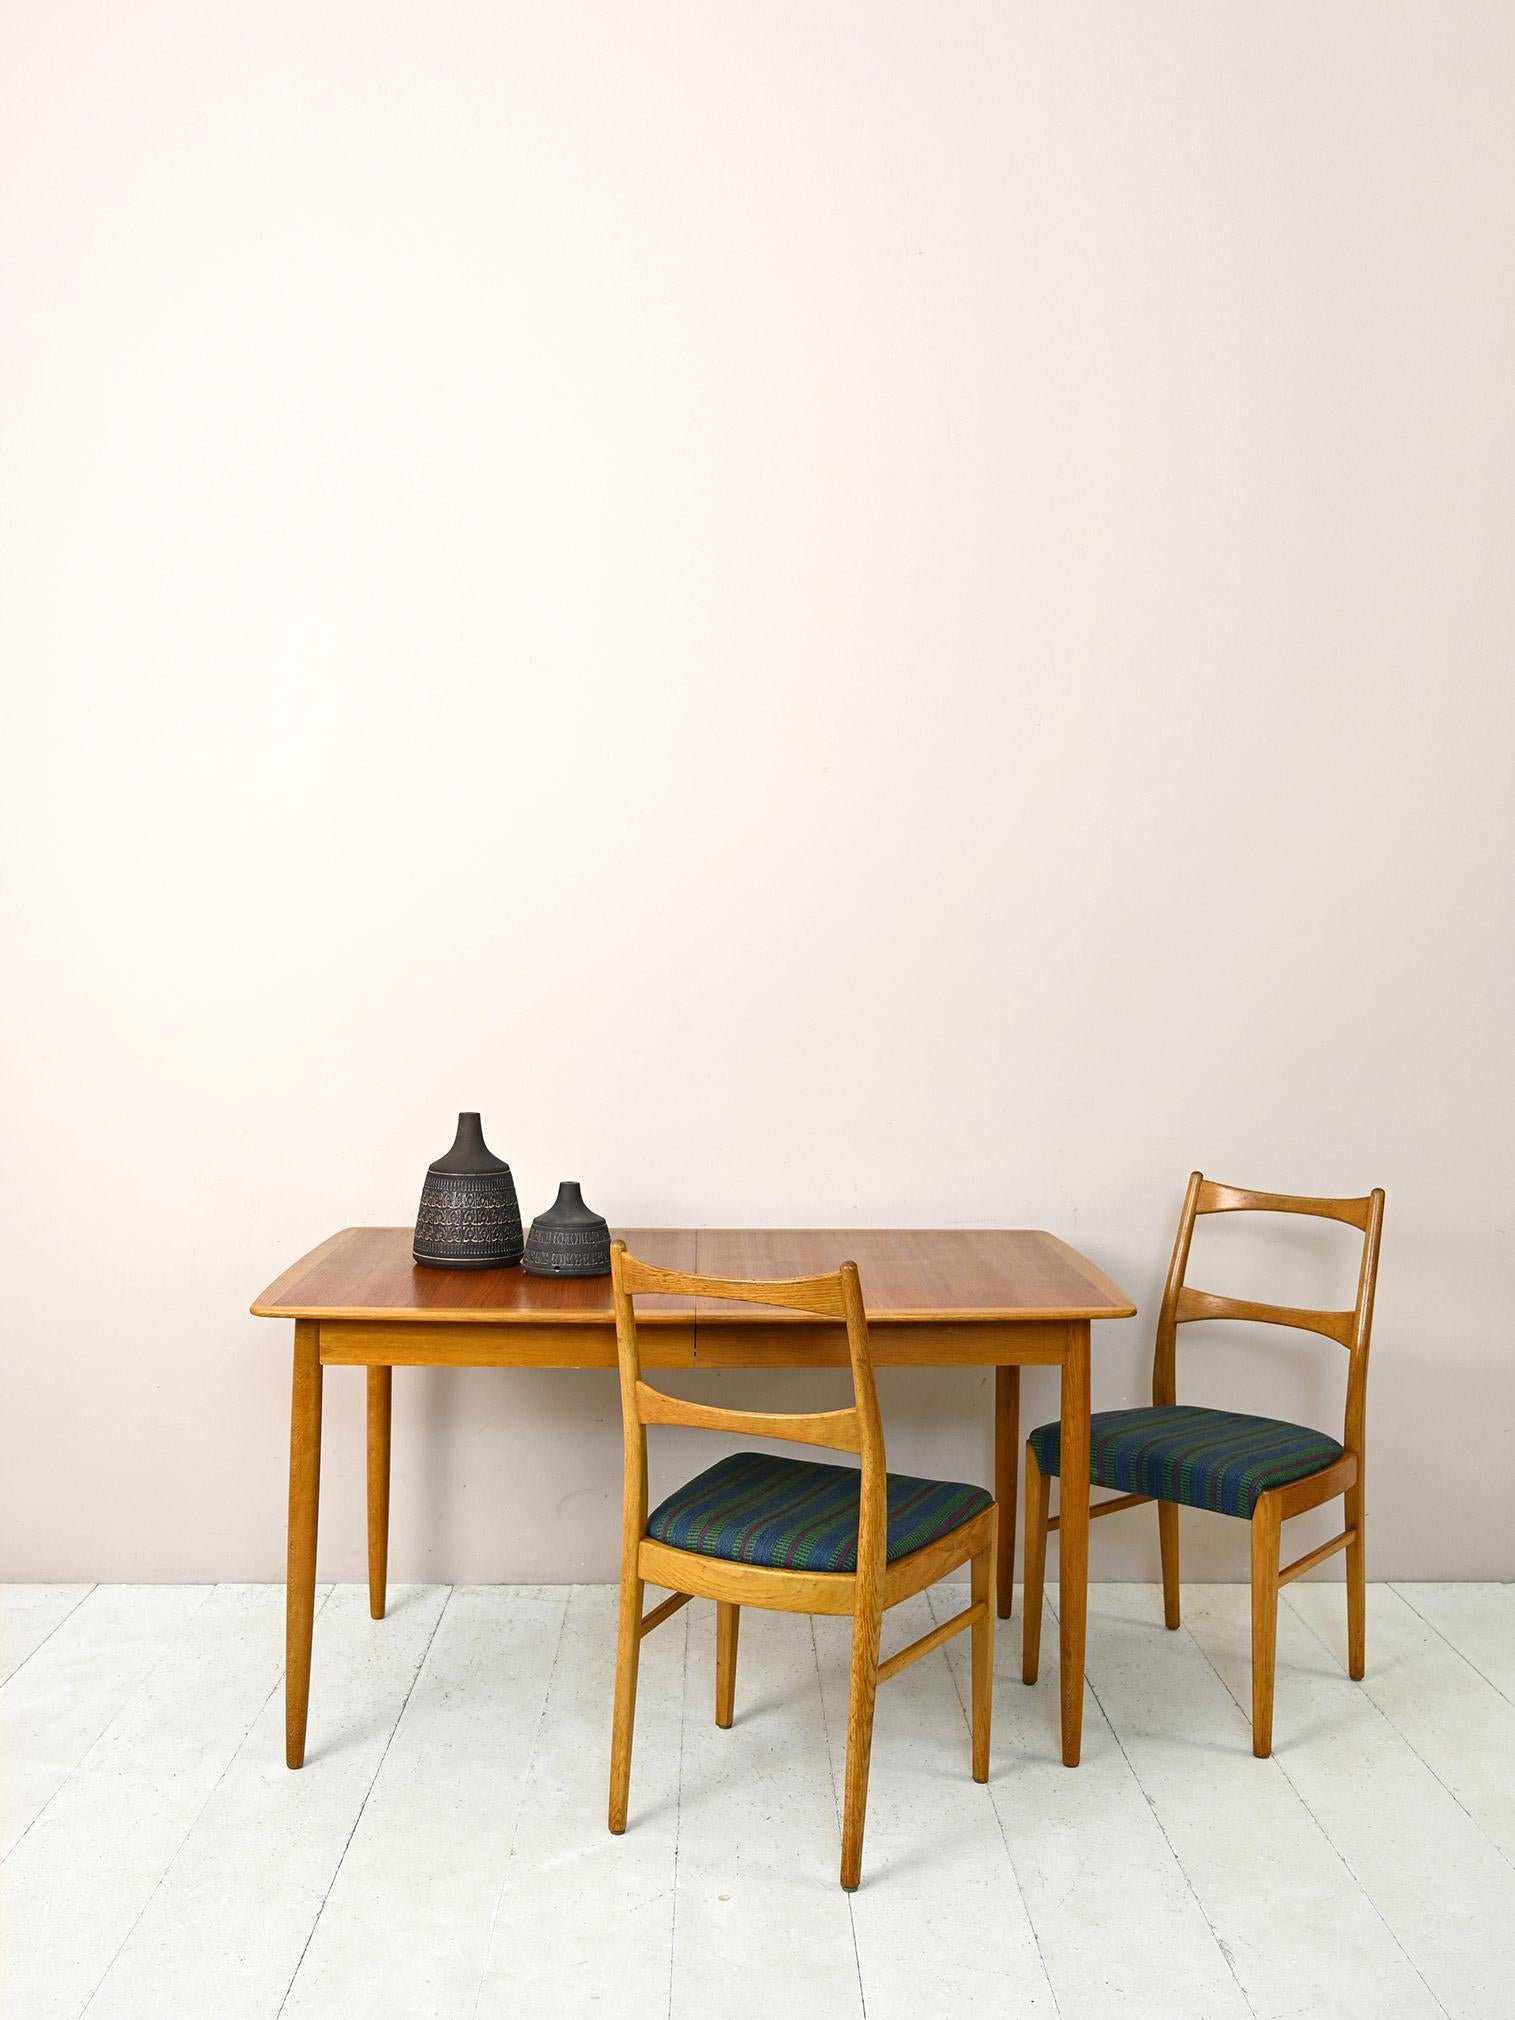 Table de salle à manger de fabrication scandinave des années 1960.

Un meuble pratique au style scandinave parfait, composé d'un Top-Light aux bords adoucis dont le profil en bois de chêne clair dessine le périmètre.
Les pieds coniques en bois